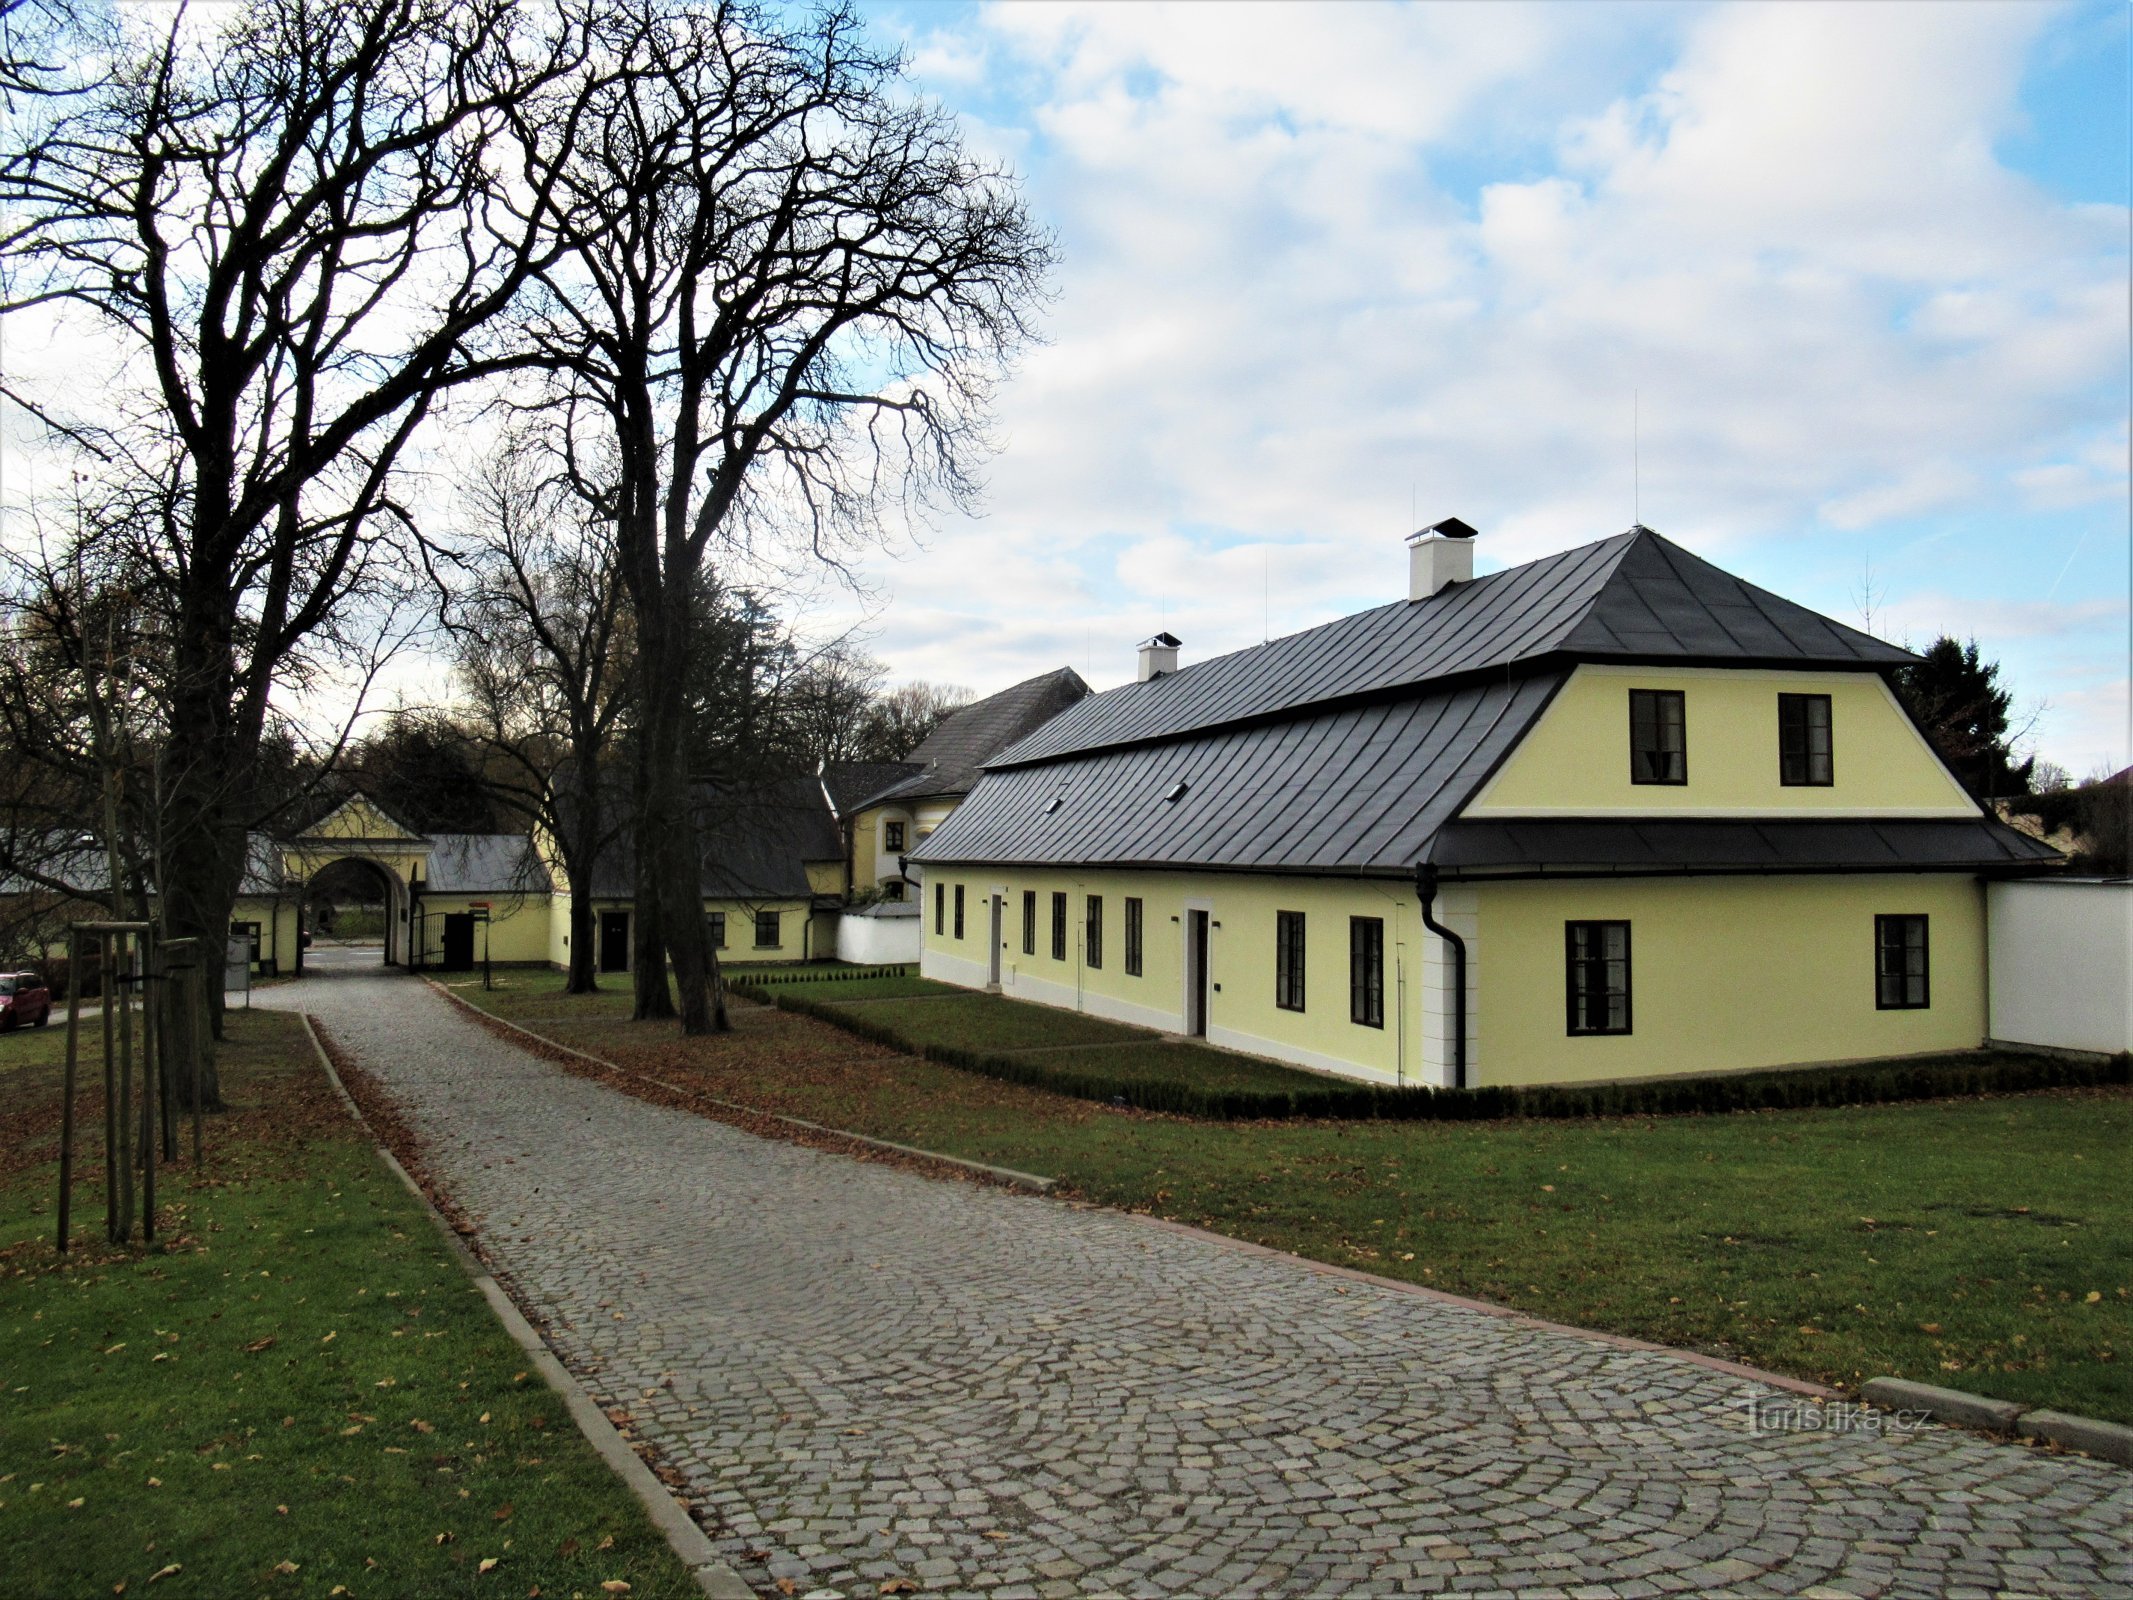 Žďár nad Sázavou - trädgårdsmästarens hus nära slottet